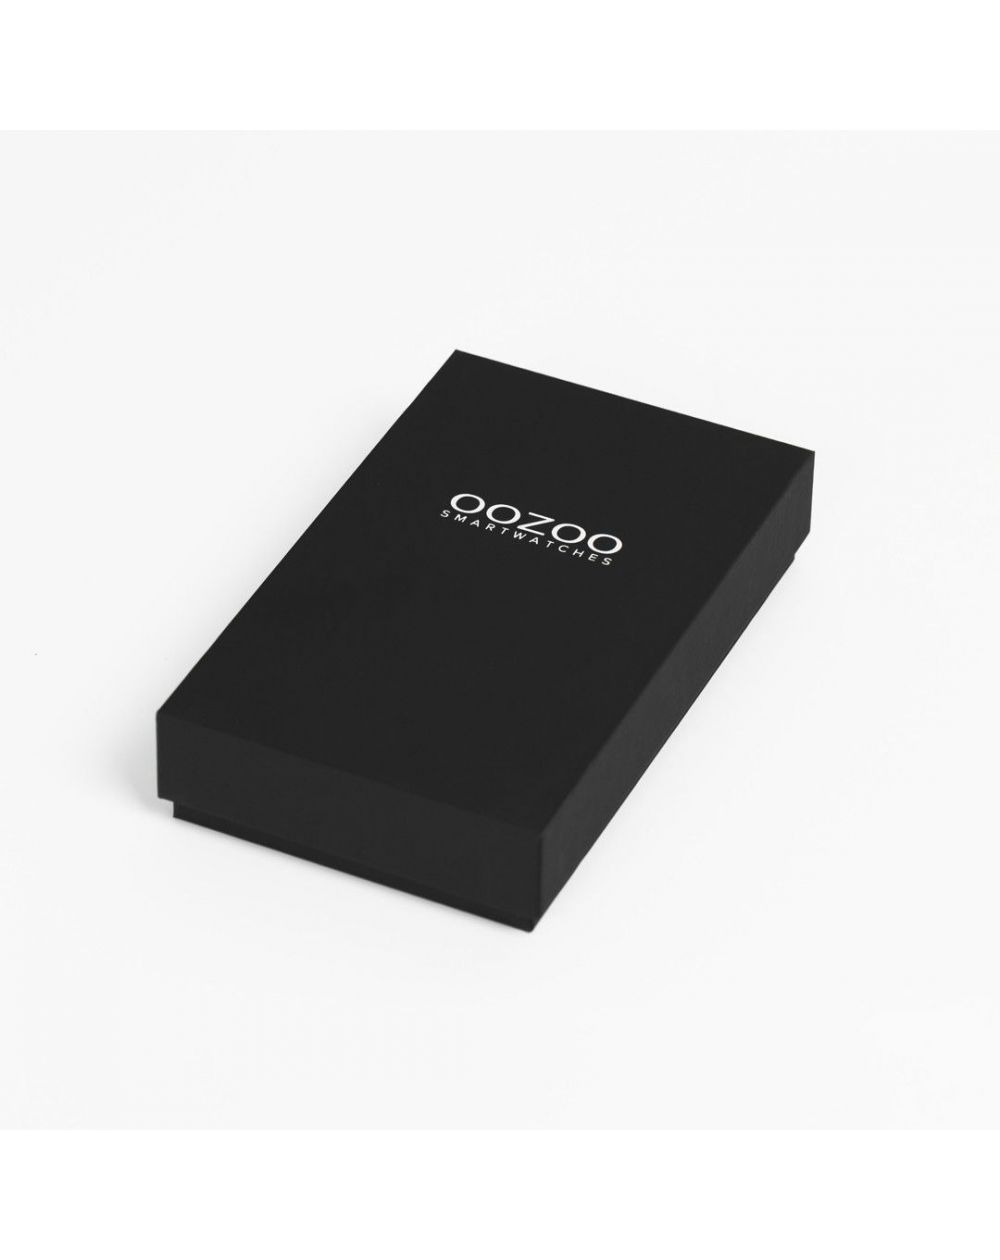 Montre Oozoo Q00305 - Smartwatch - Marque OOZOO - Livraison gratuite